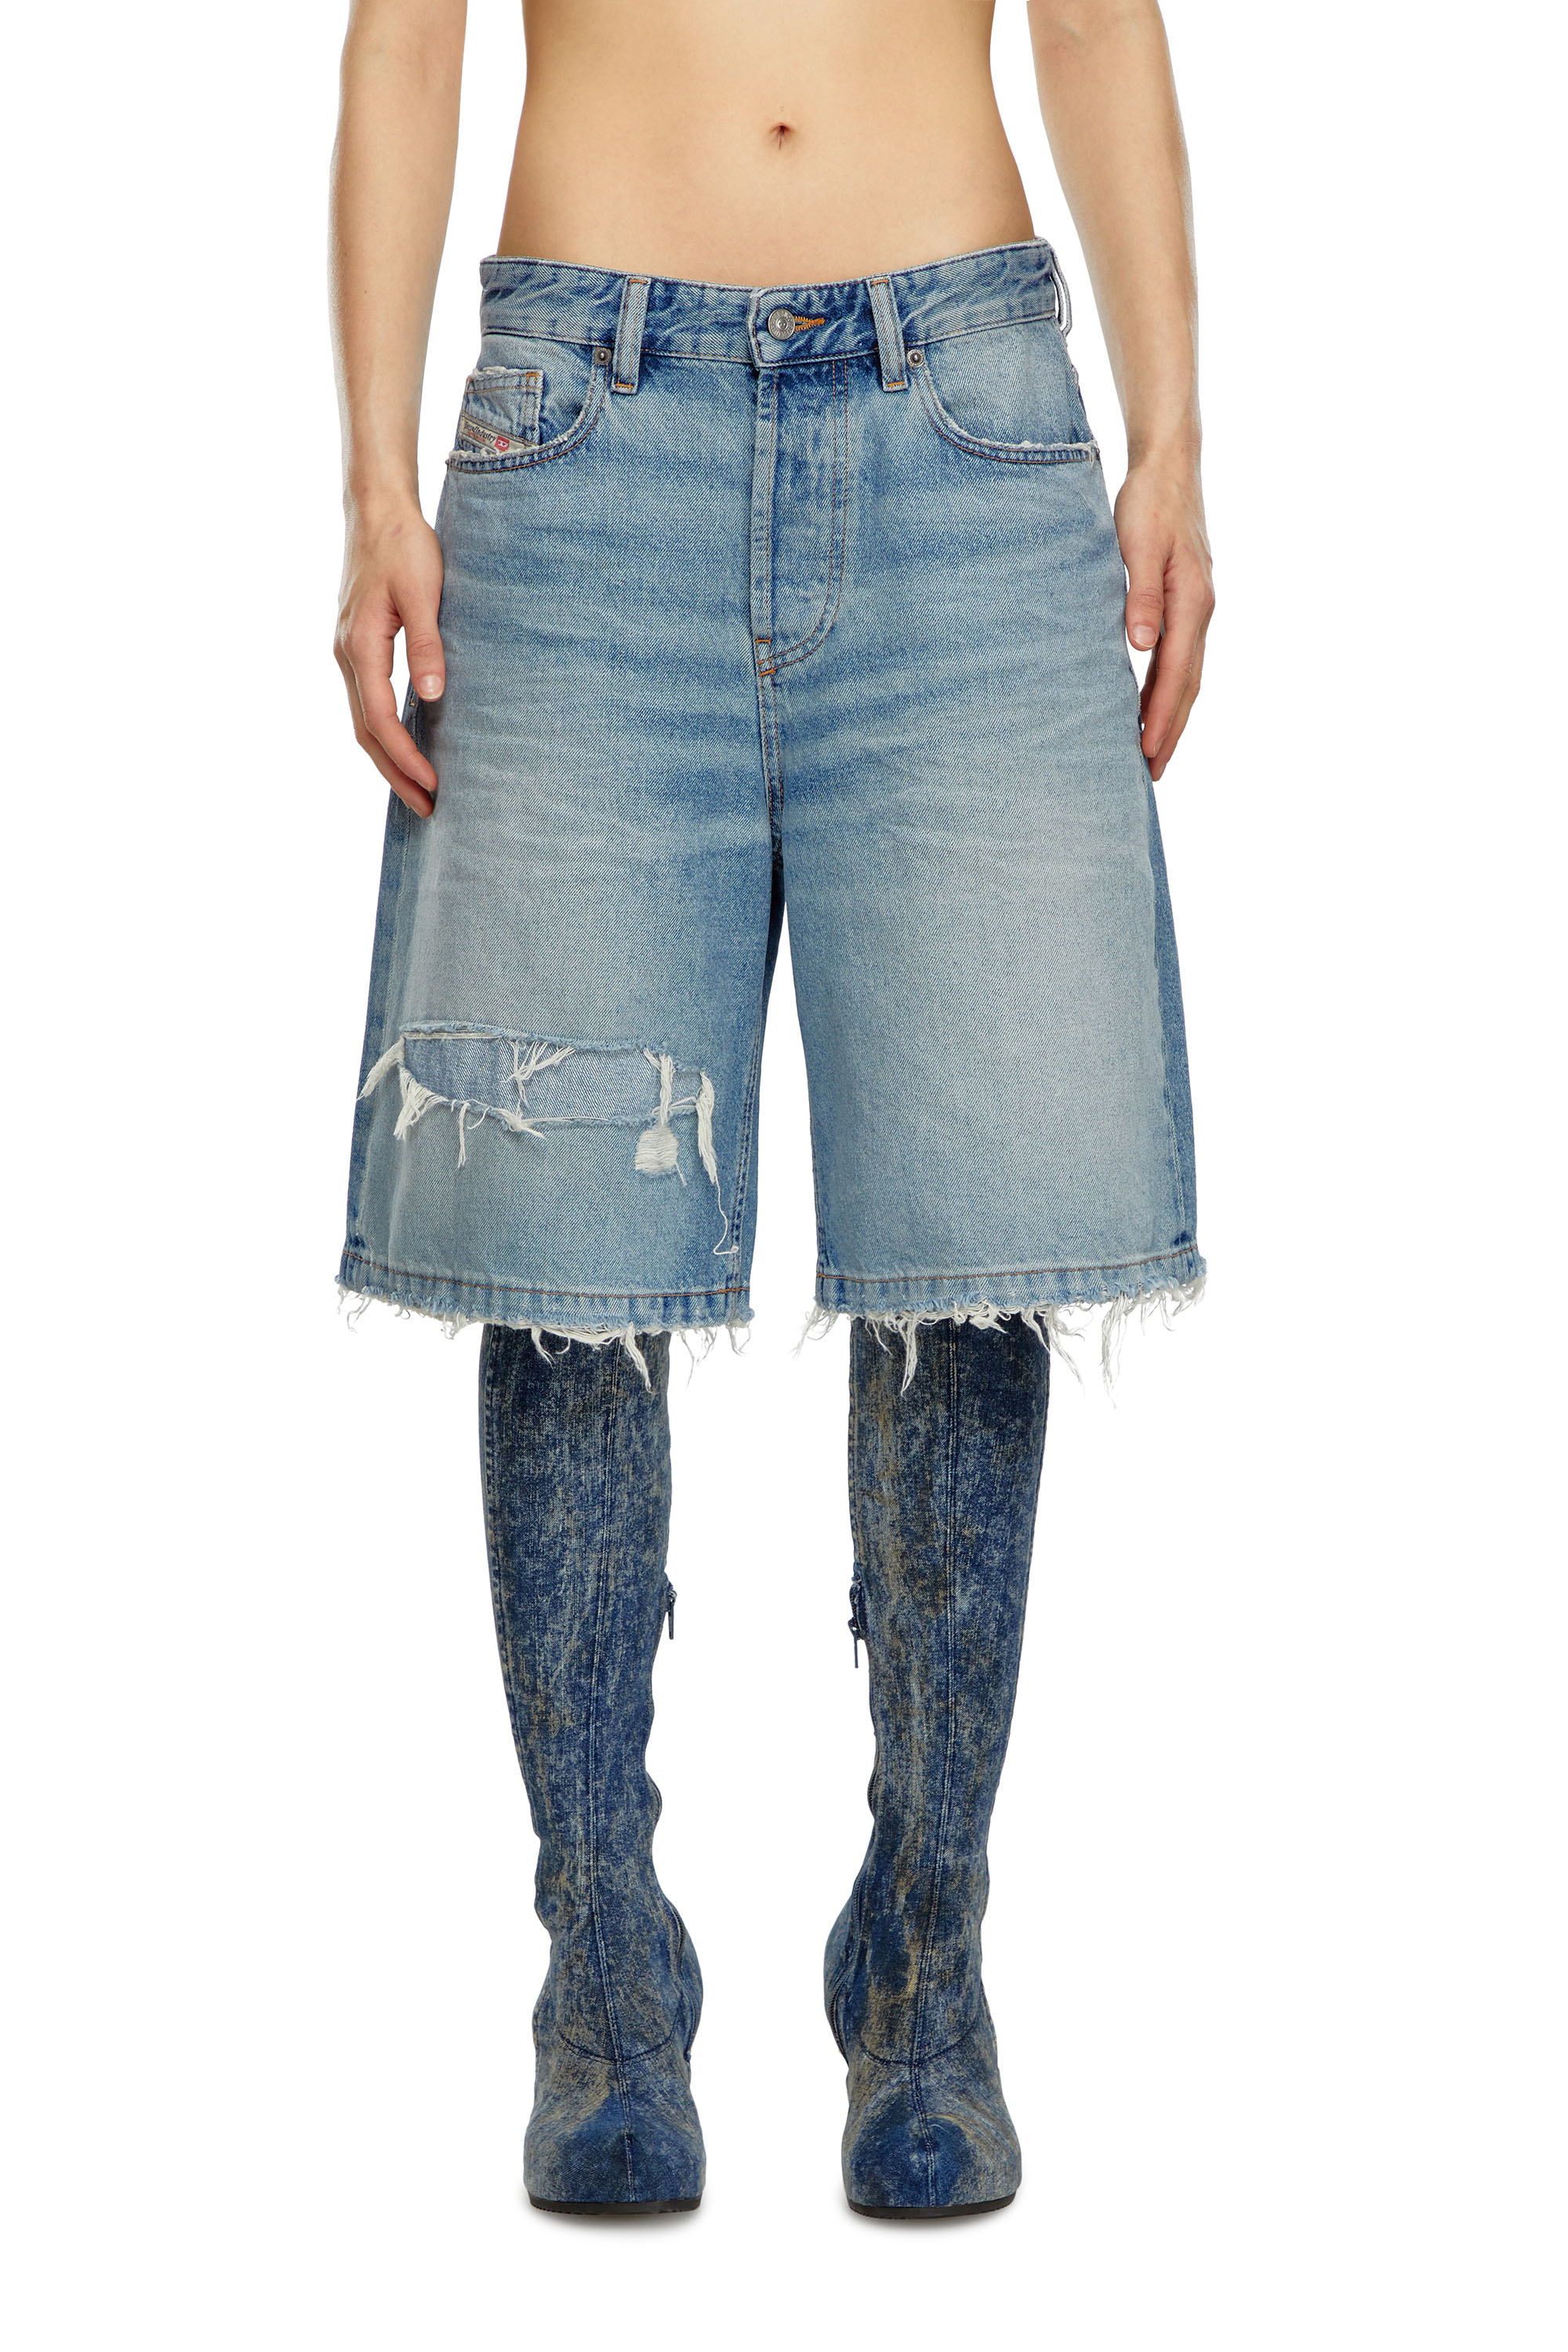 Diesel - Pantalones cortos en denim rasgado y enmendado - Shorts - Mujer - Azul marino